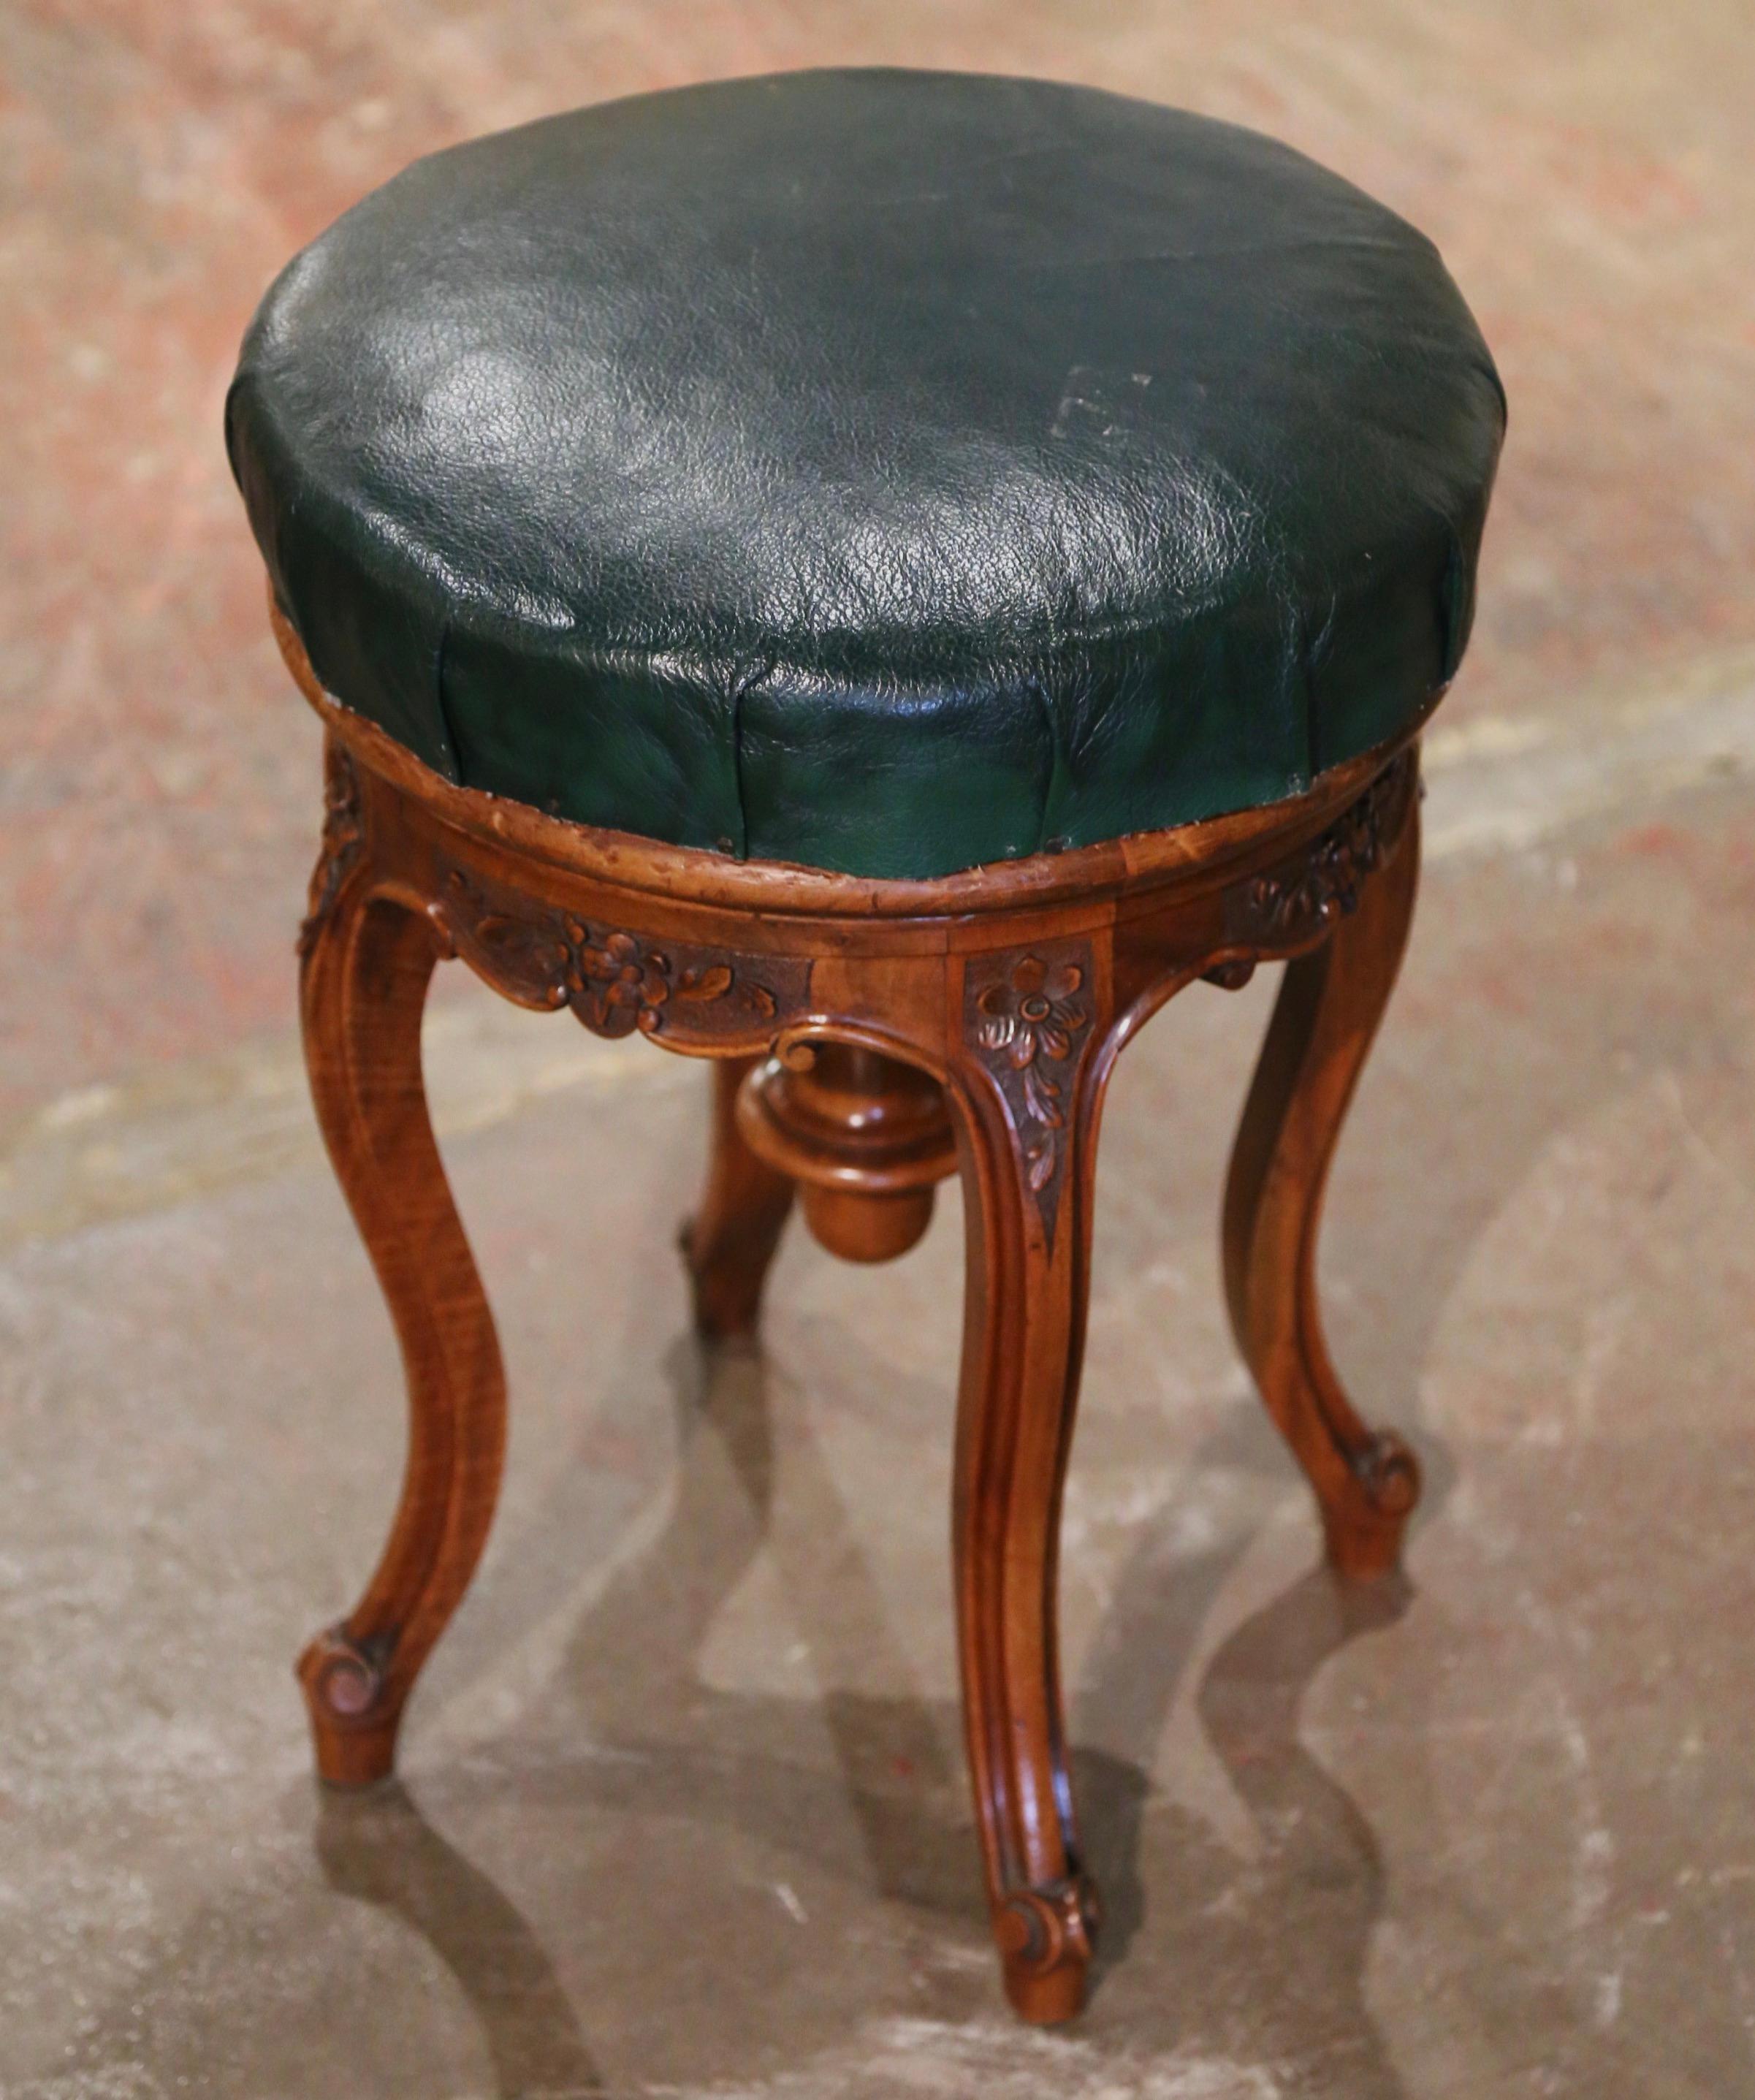 Dieser geschnitzte antike Obstholzhocker wurde um 1880 in der Provence, Frankreich, hergestellt. Das auf Cabriole-Beinen mit Escargot-Füßen stehende Klaviergestell ist an den Schultern mit floralen Motiven verziert. Die runde Sitzfläche ist mit